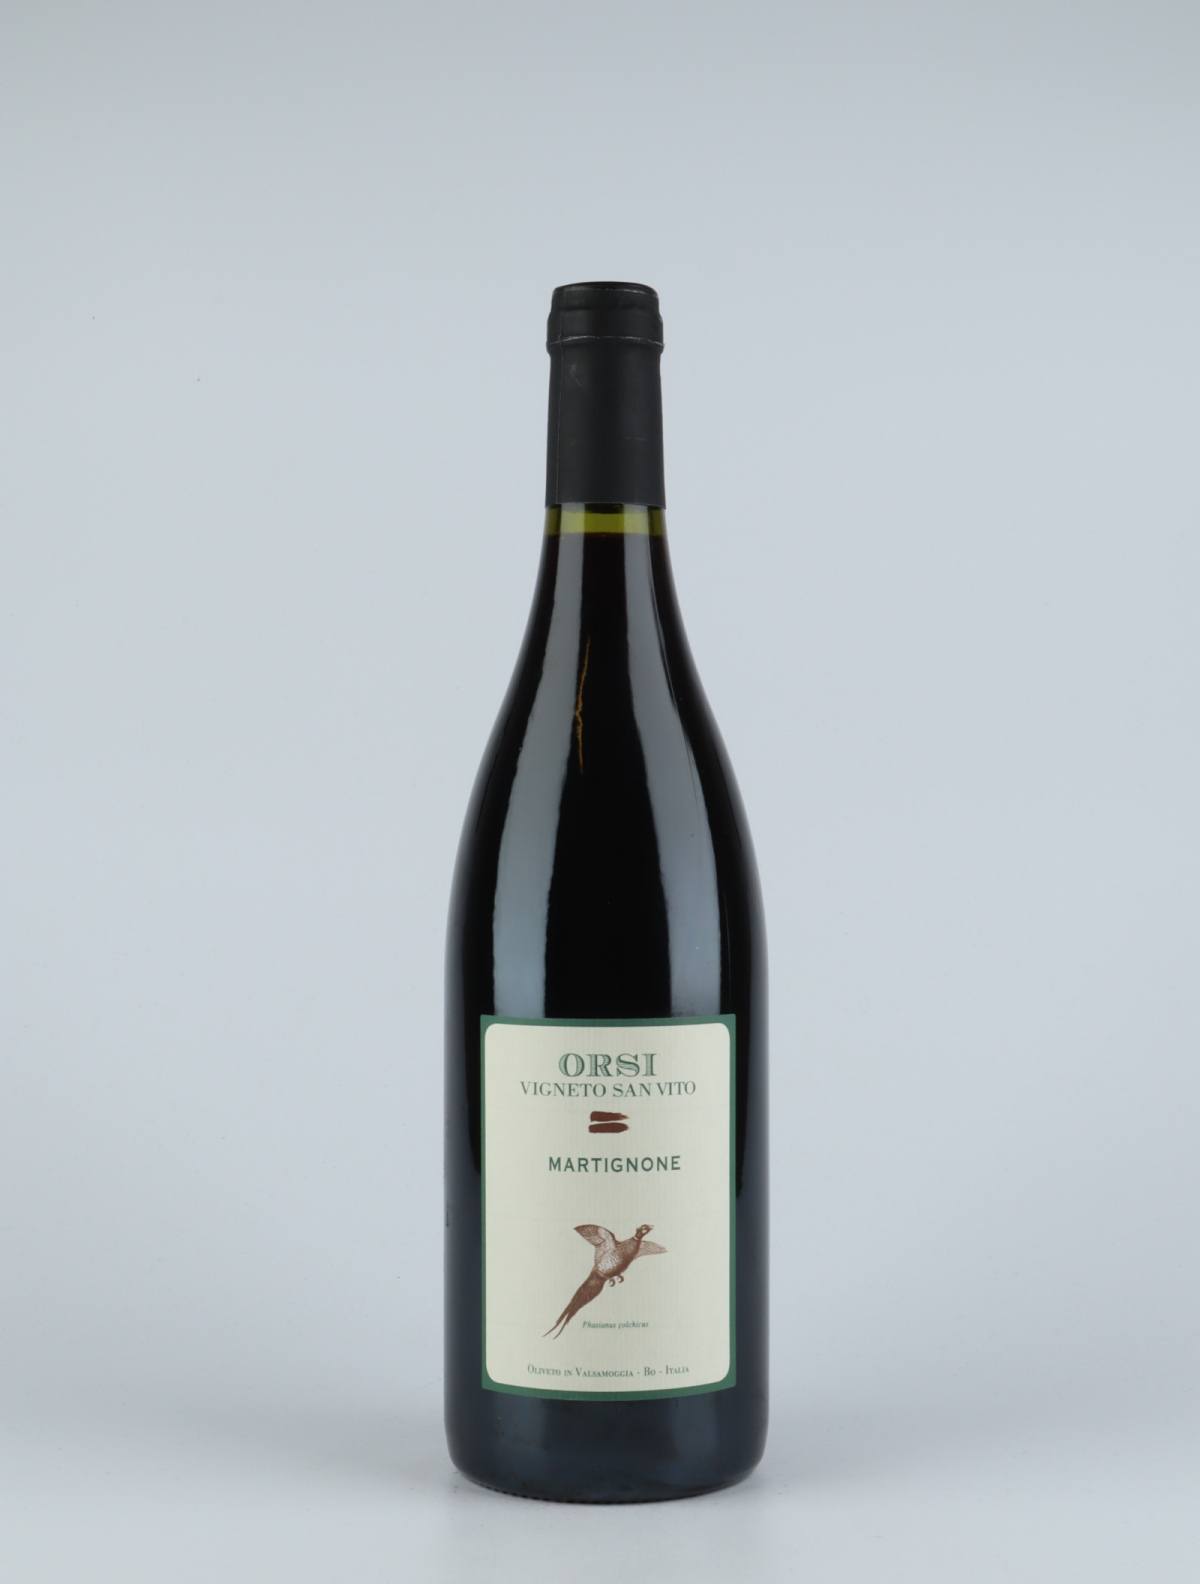 A bottle 2017 Martignone Red wine from Orsi - San Vito, Emilia-Romagna in Italy